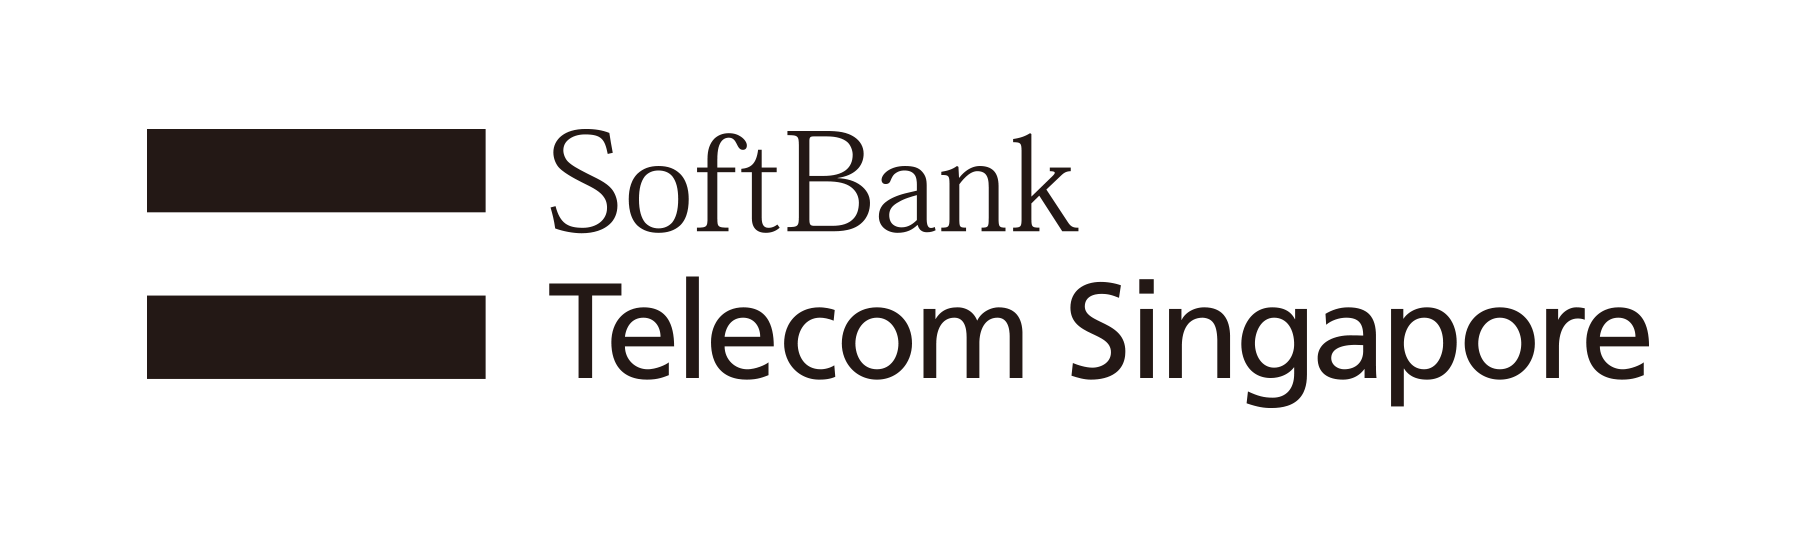 SoftBank Telecom Singapore